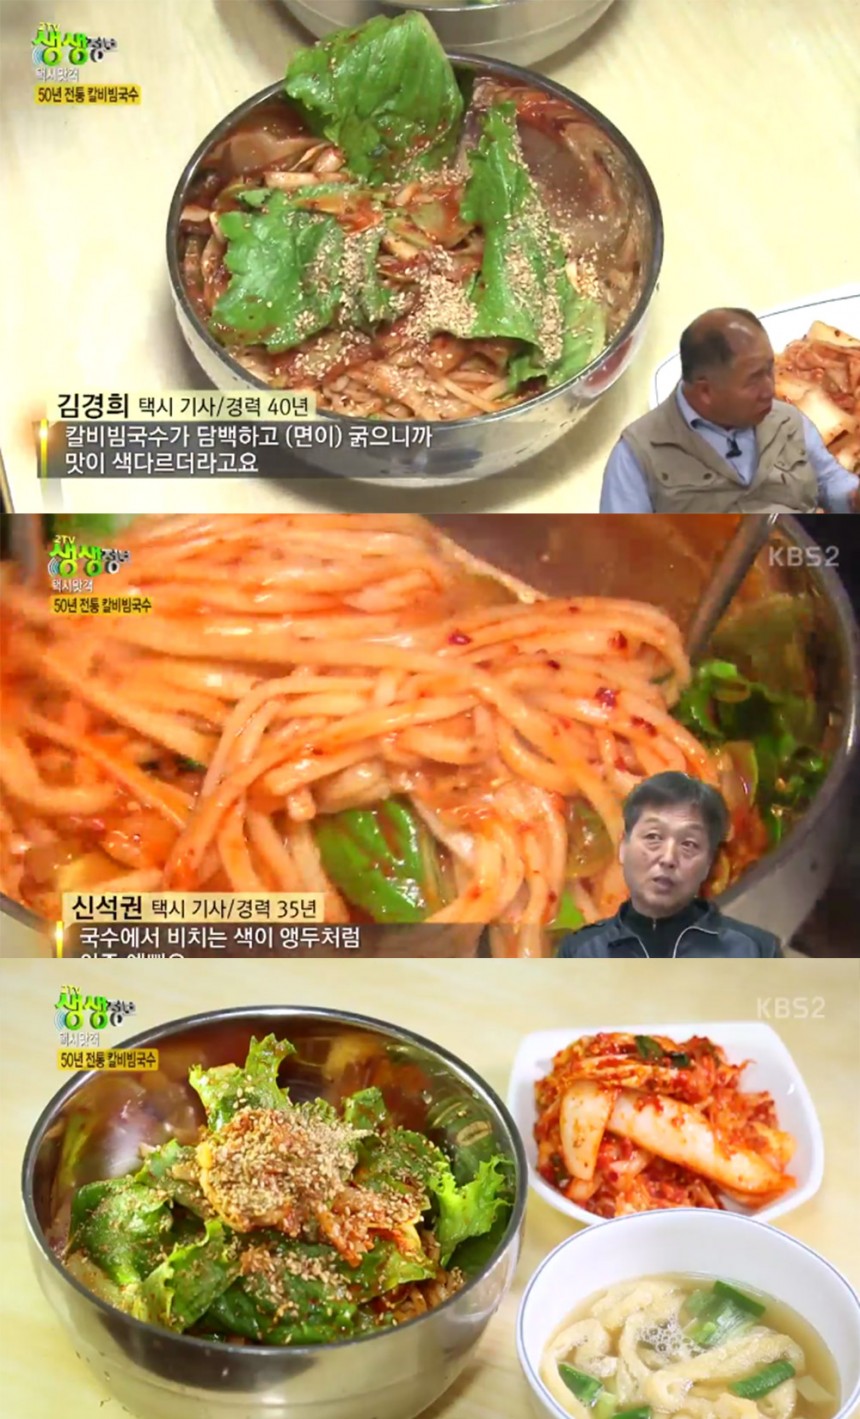 ‘생생정보’ 방송 화면 / KBS ‘생생정보’ 방송 캡처